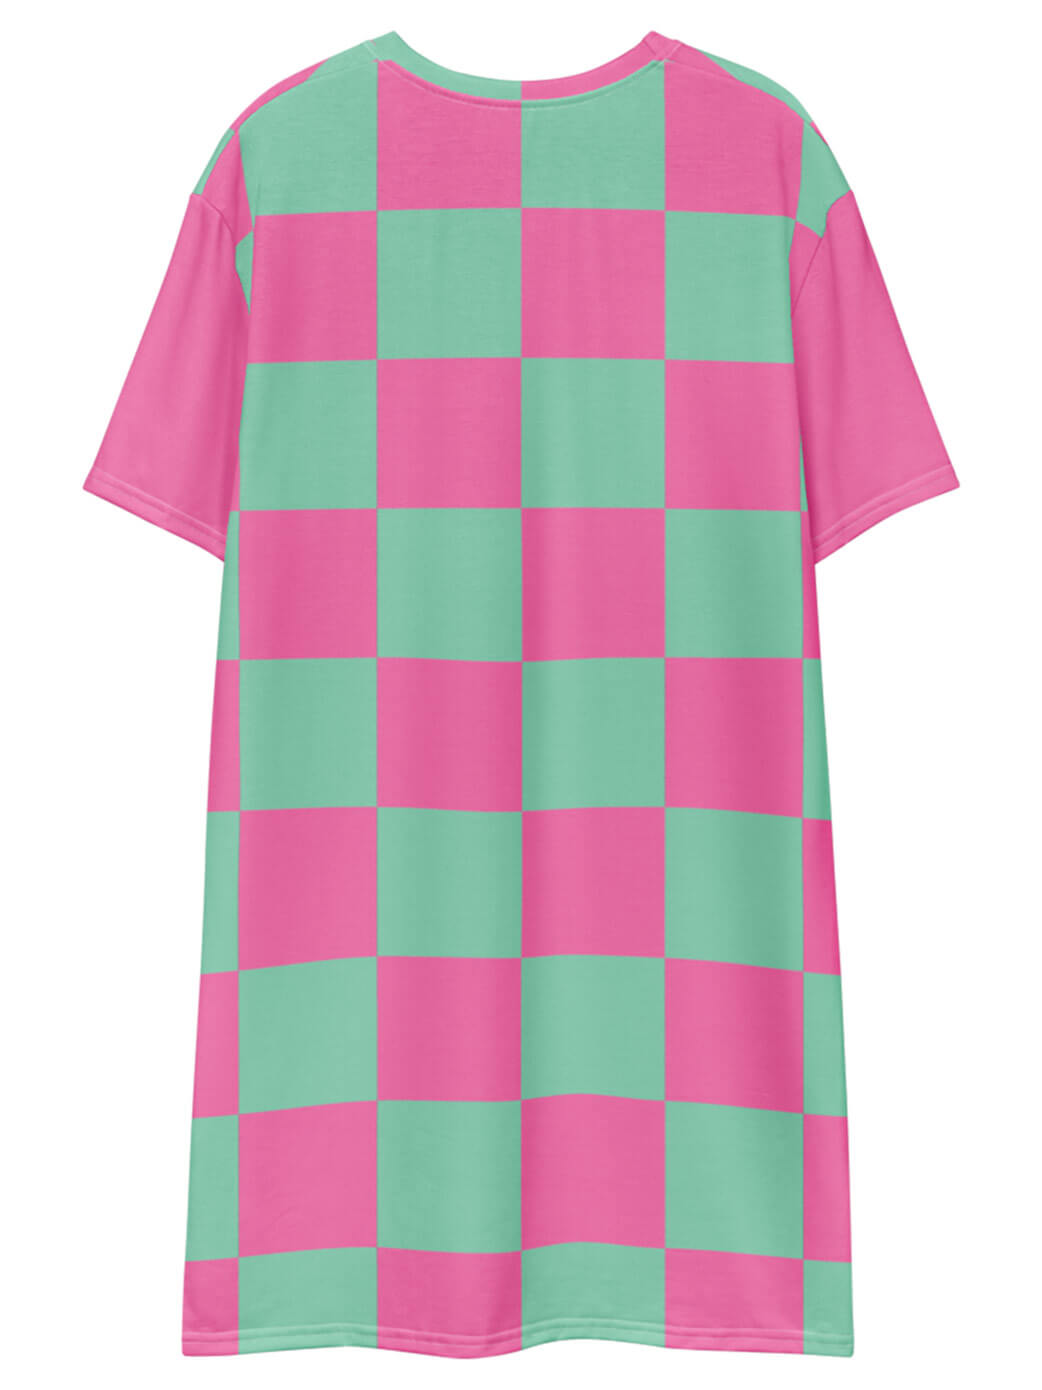 Kawaii checker plus size dress.